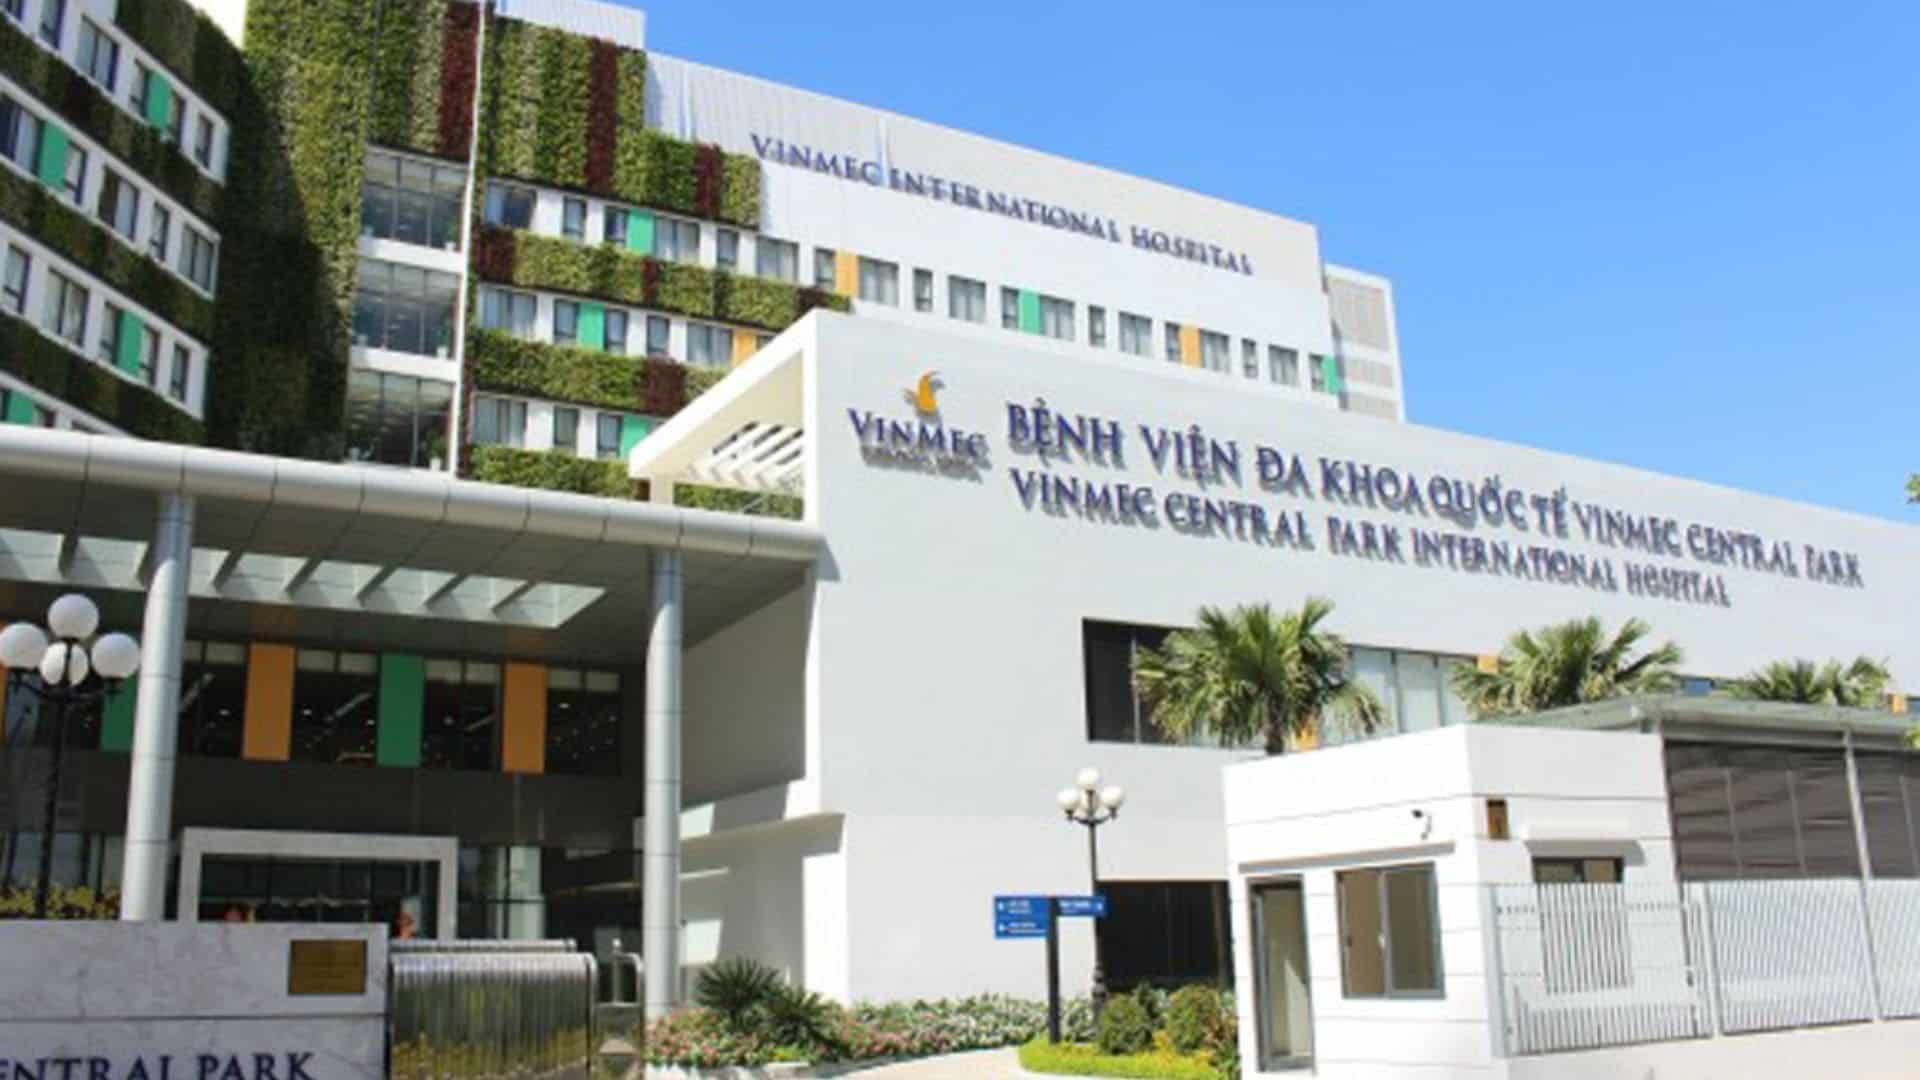 Vinmec - Bệnh viện đa khoa quốc tế chất lượng